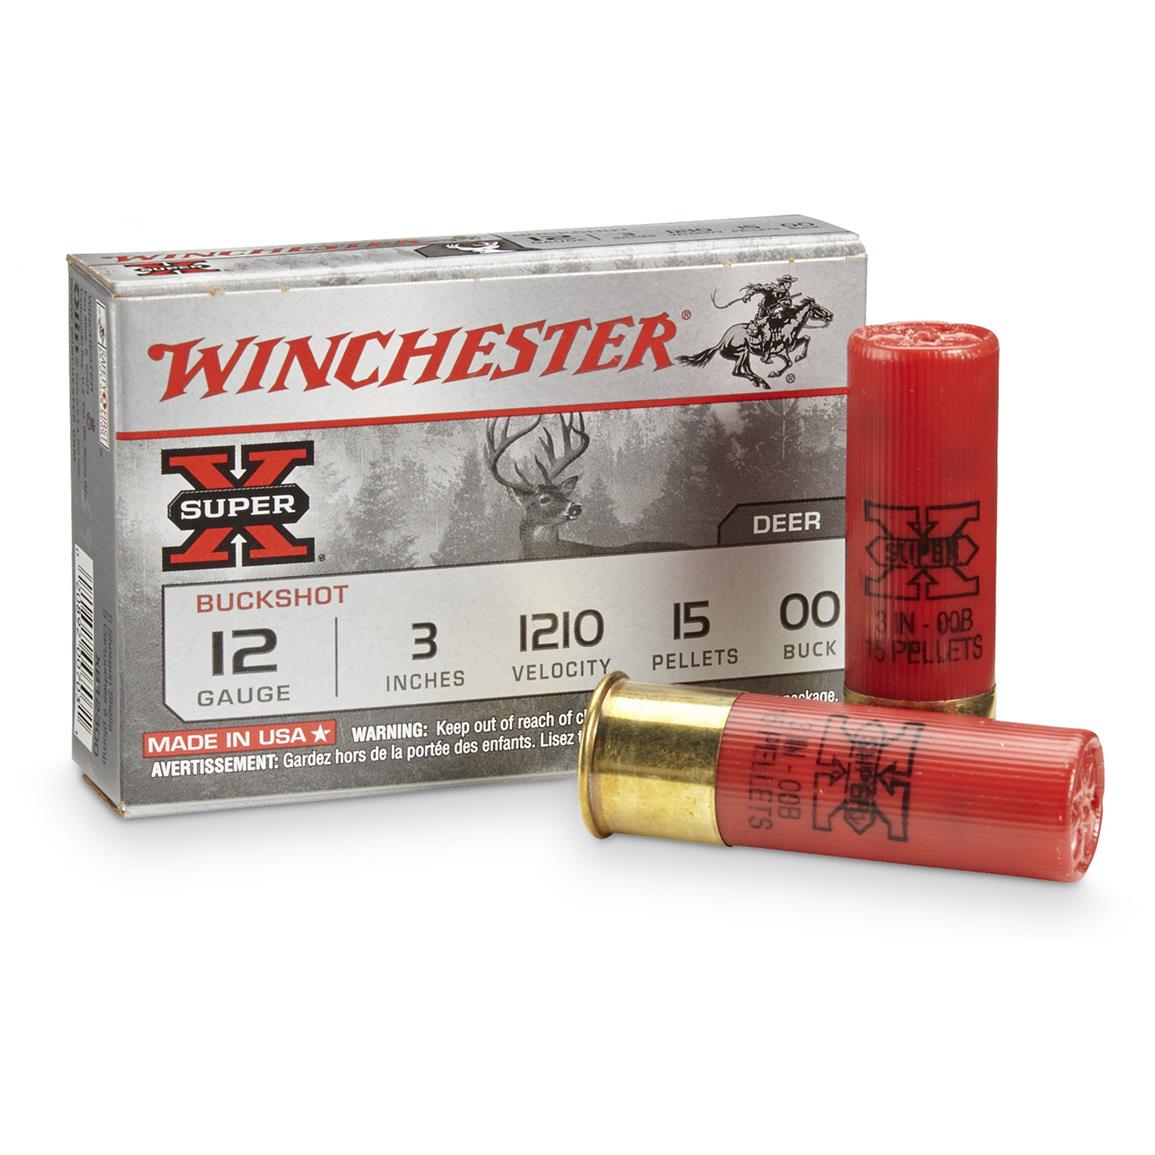 Winchester Super X Buckshot With Buffered Shot 12 Gauge Xb12300 3 Mag 00 Buck 15 Pellets 5